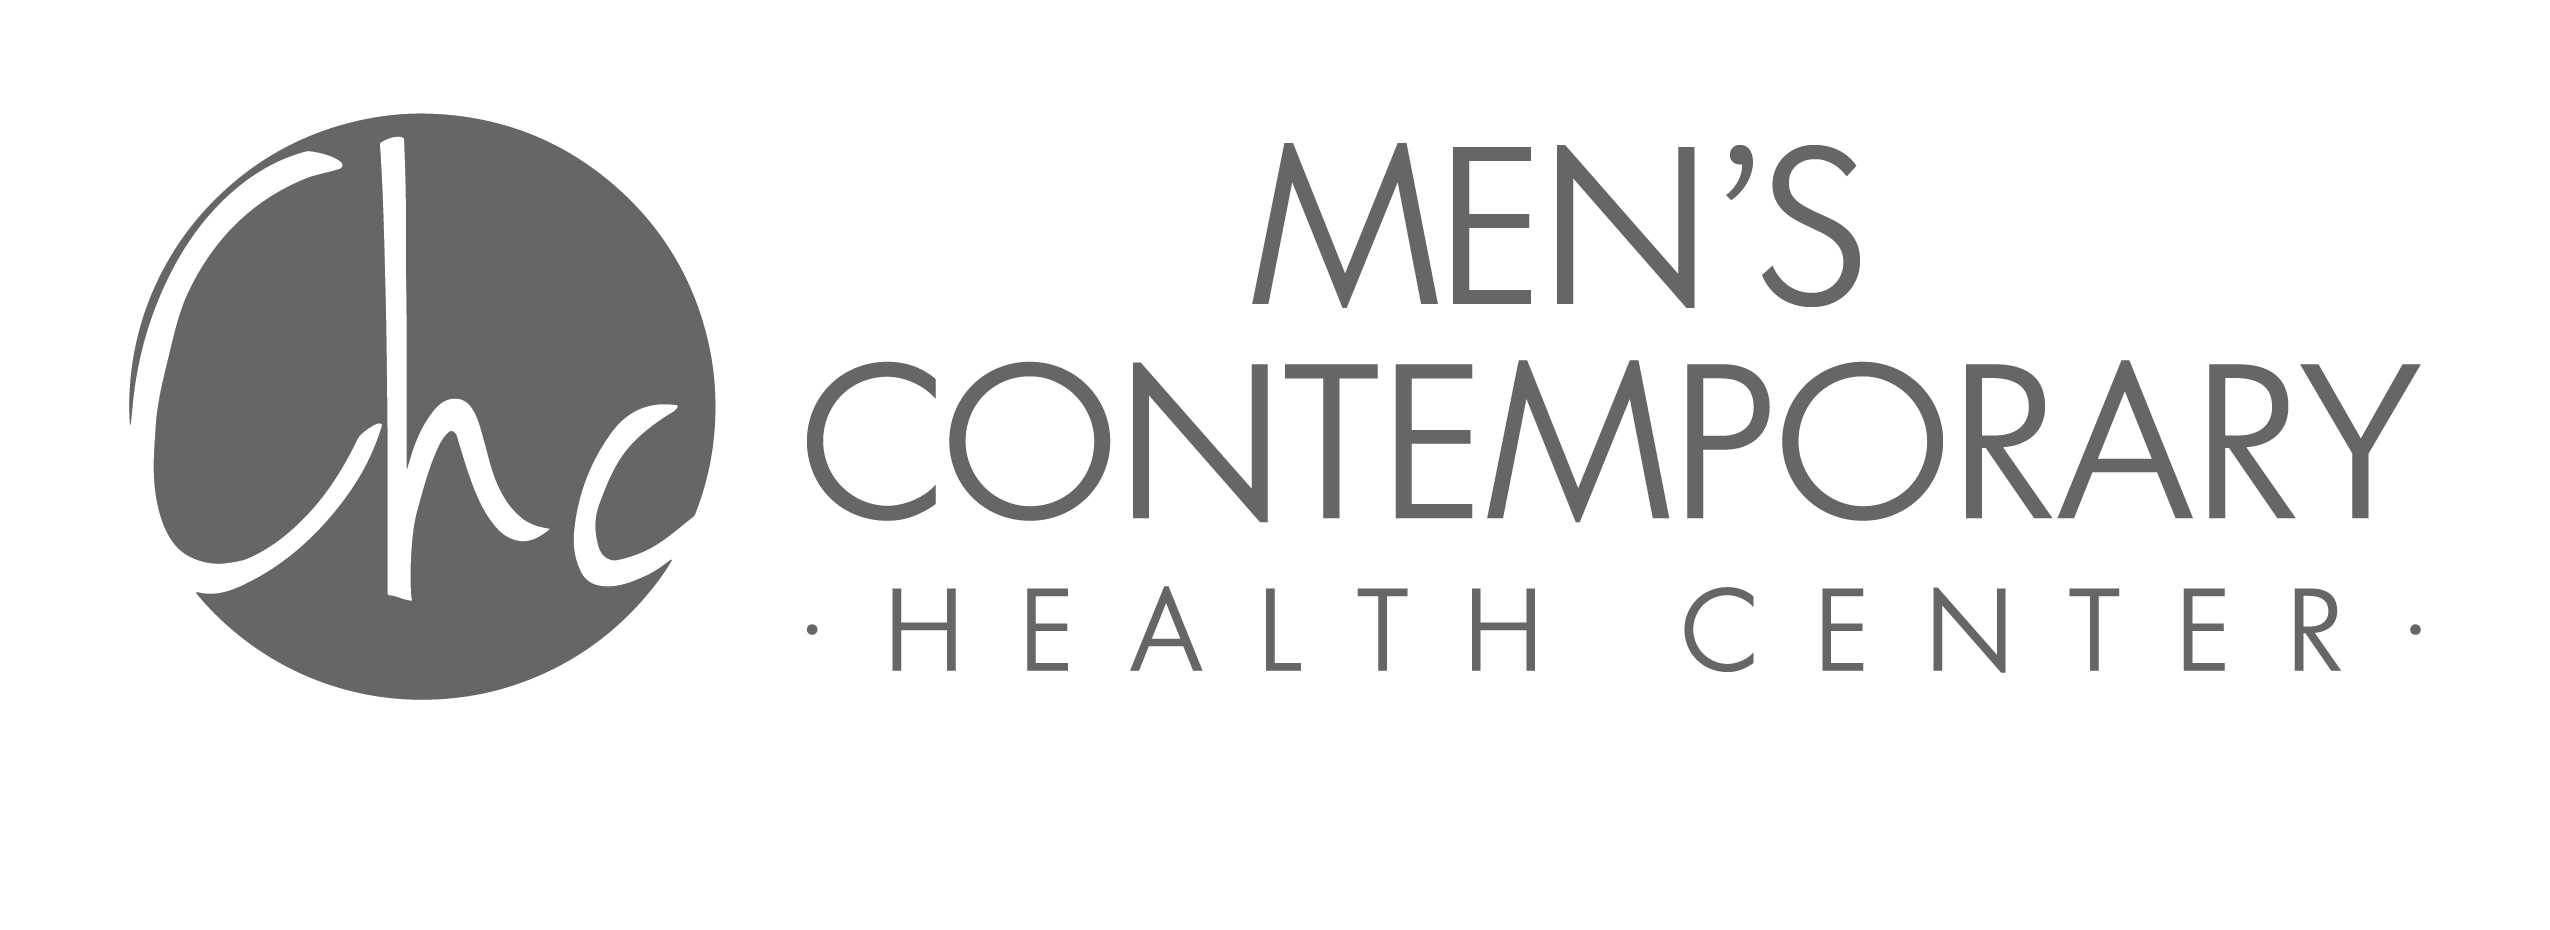 Men's Contemporary Health Center